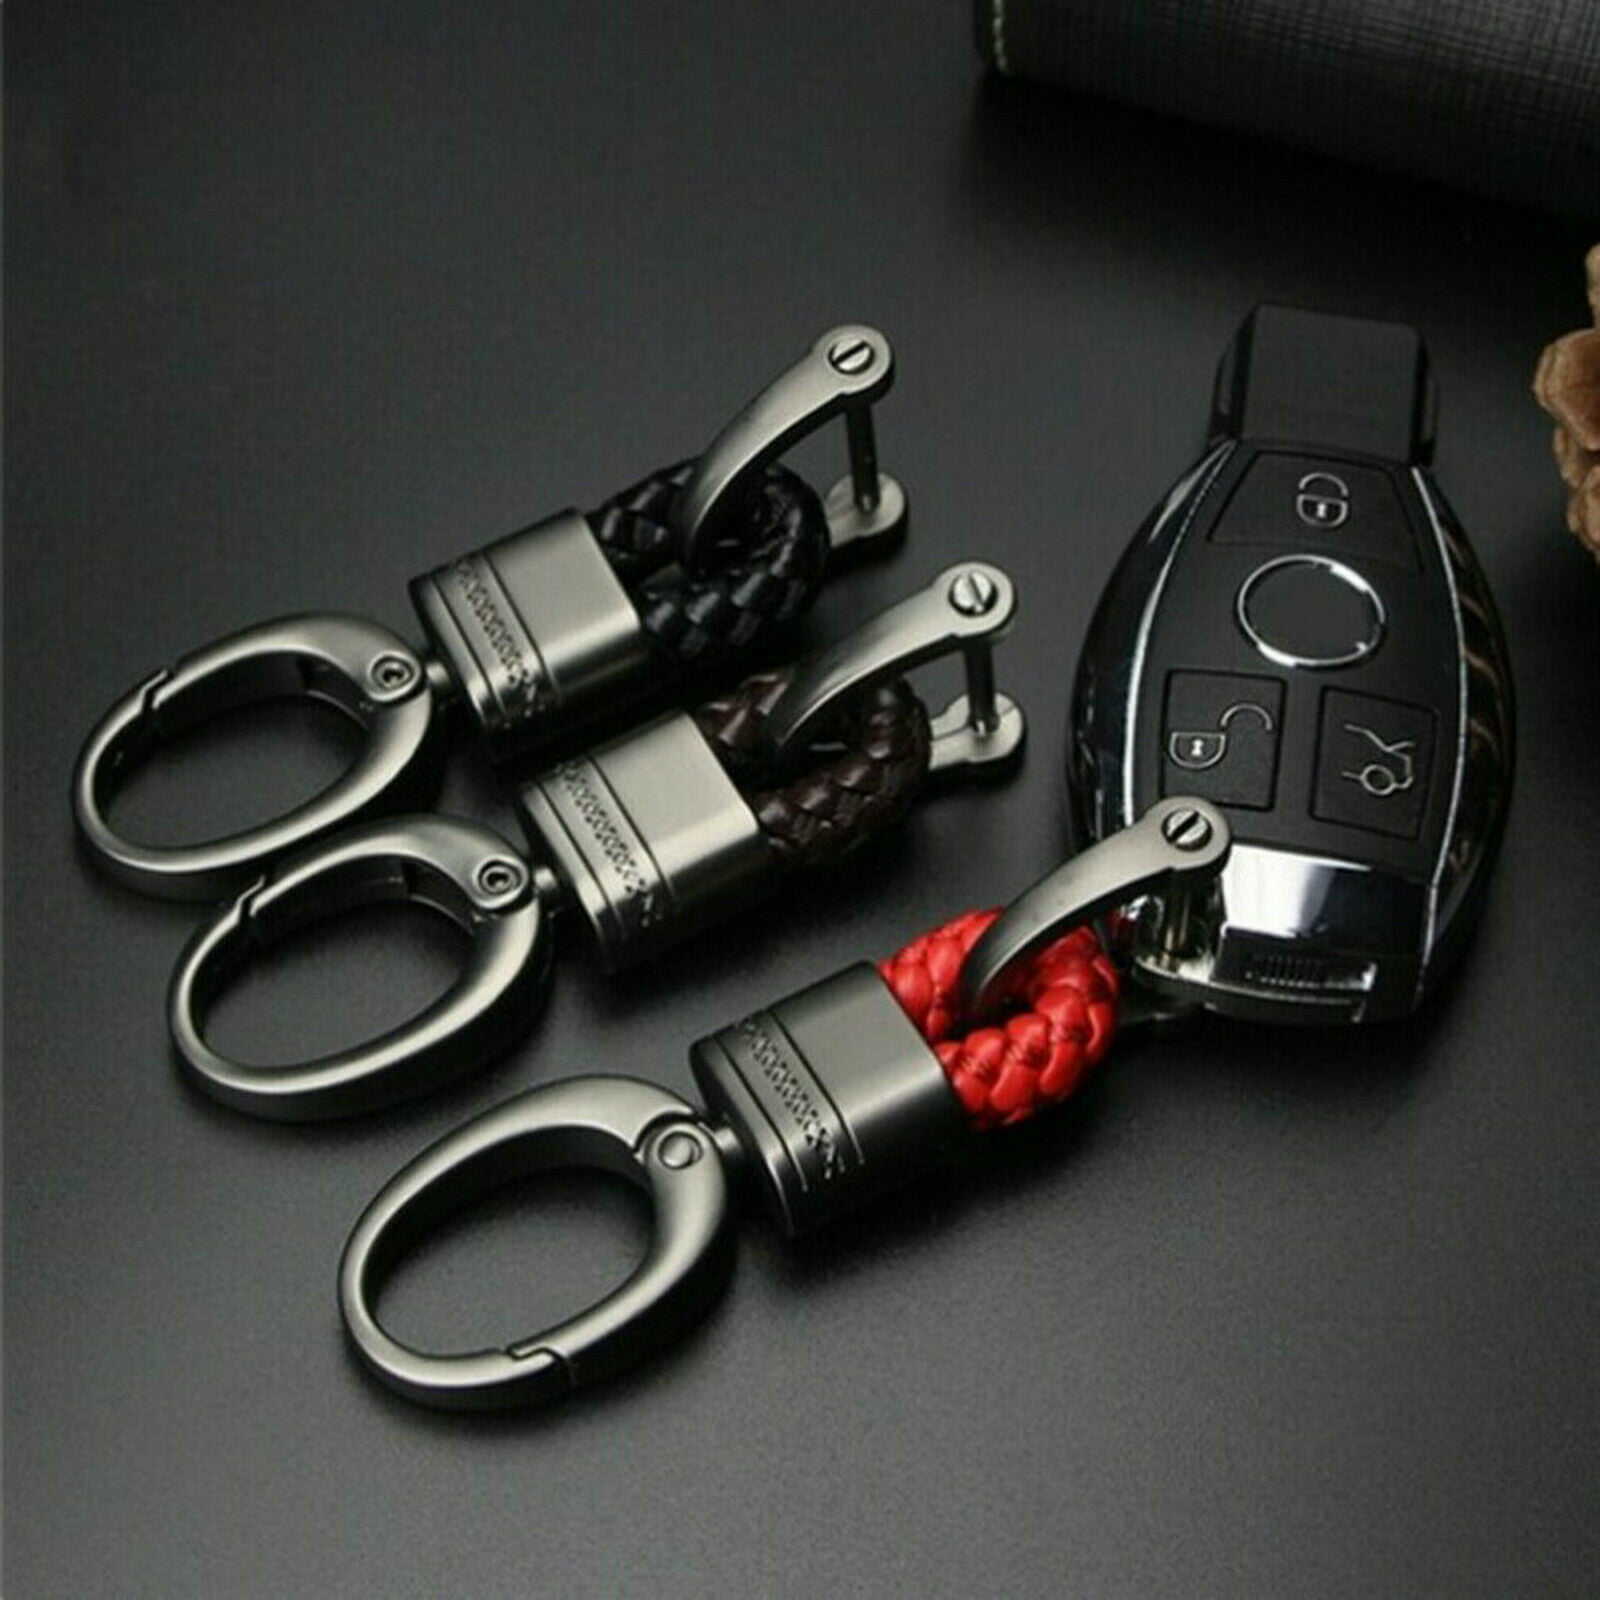 Creative Alloy Metal Keyfob Car Keyring Keychain Key Chain Ring Accessory Gifts 